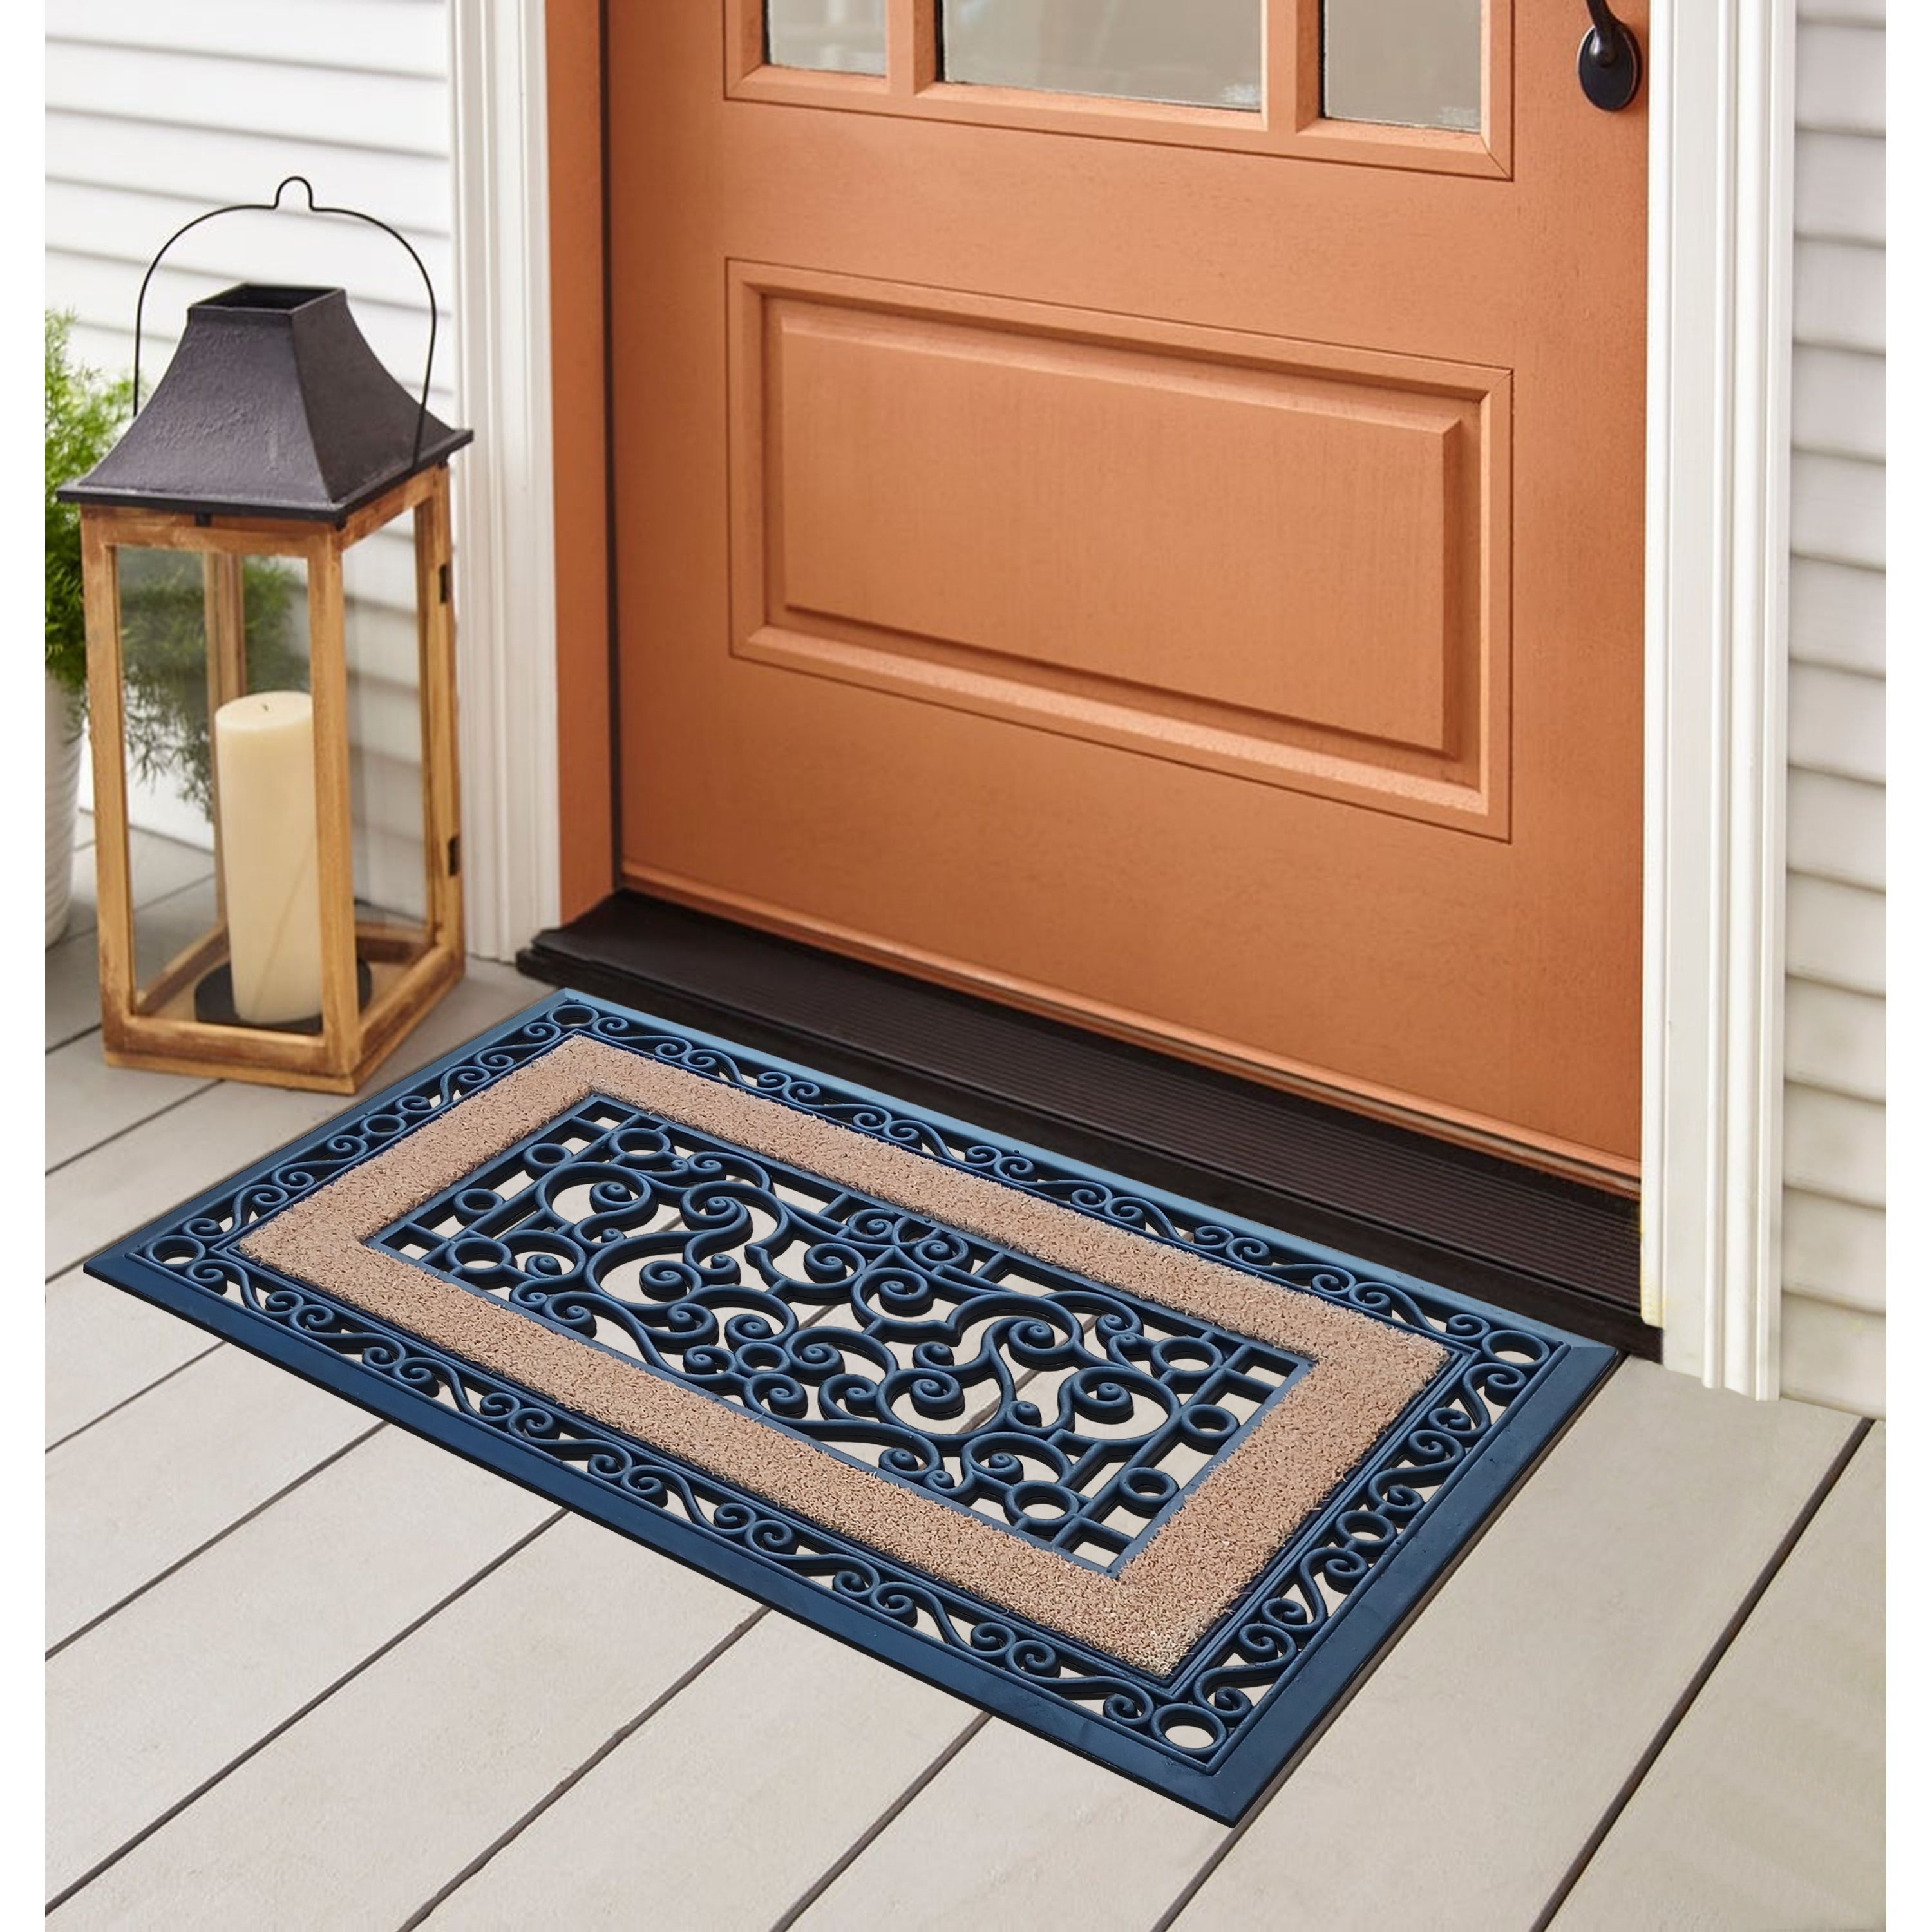 Floor Mats Outdoor Insoles Entrance Door Waterproof Door Mat